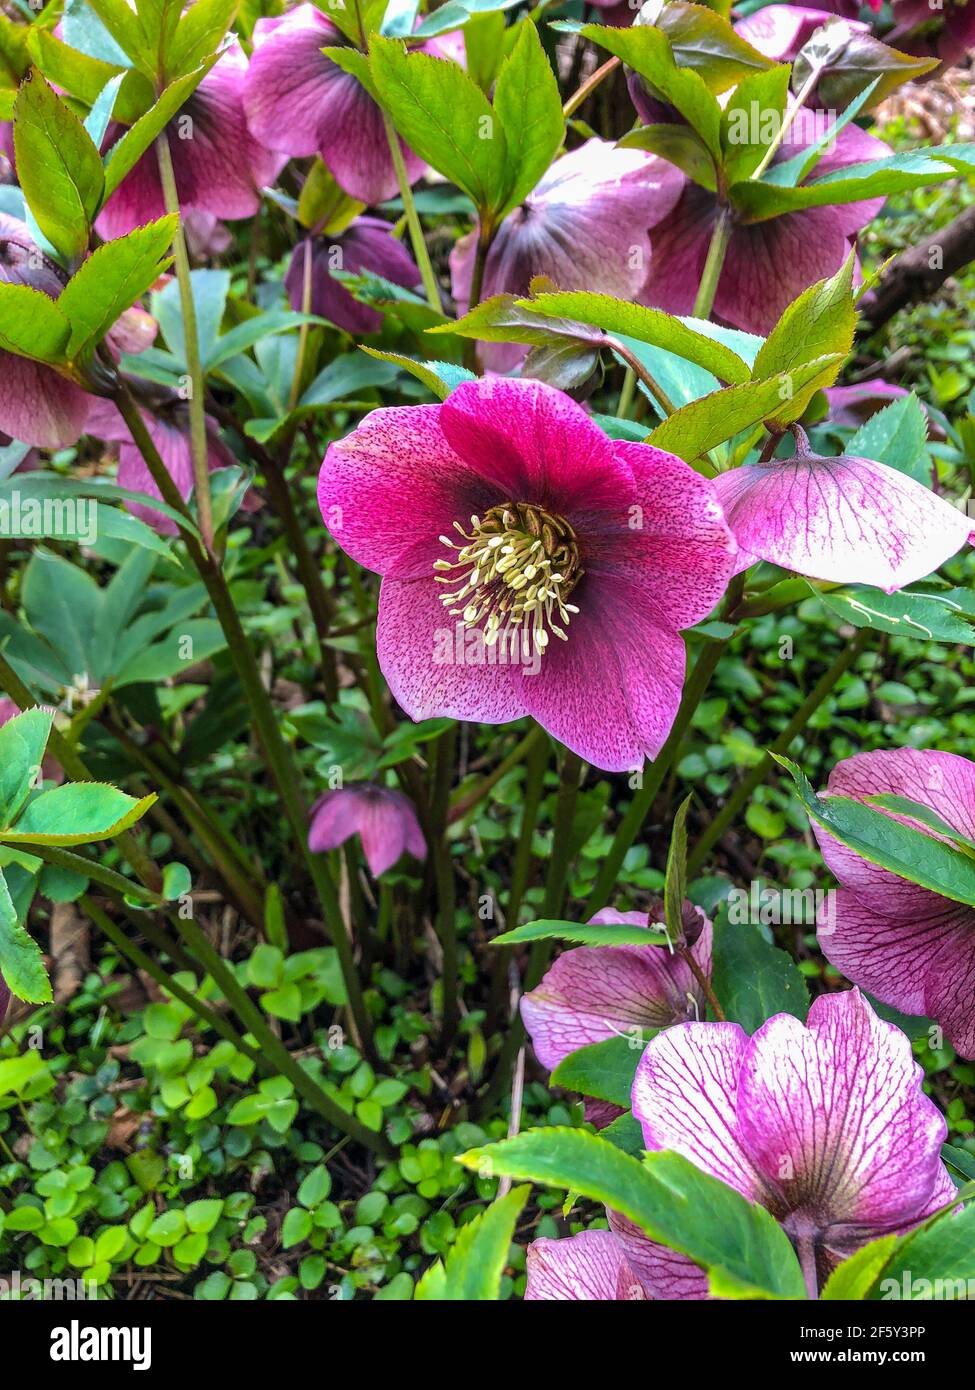 La rose de Lenten (Helleborus orientalis) est une plante à fleurs vivaces et une espèce d'hellebore de la famille des buttercup, Ranunculaceae, originaire de Grèce A. Banque D'Images